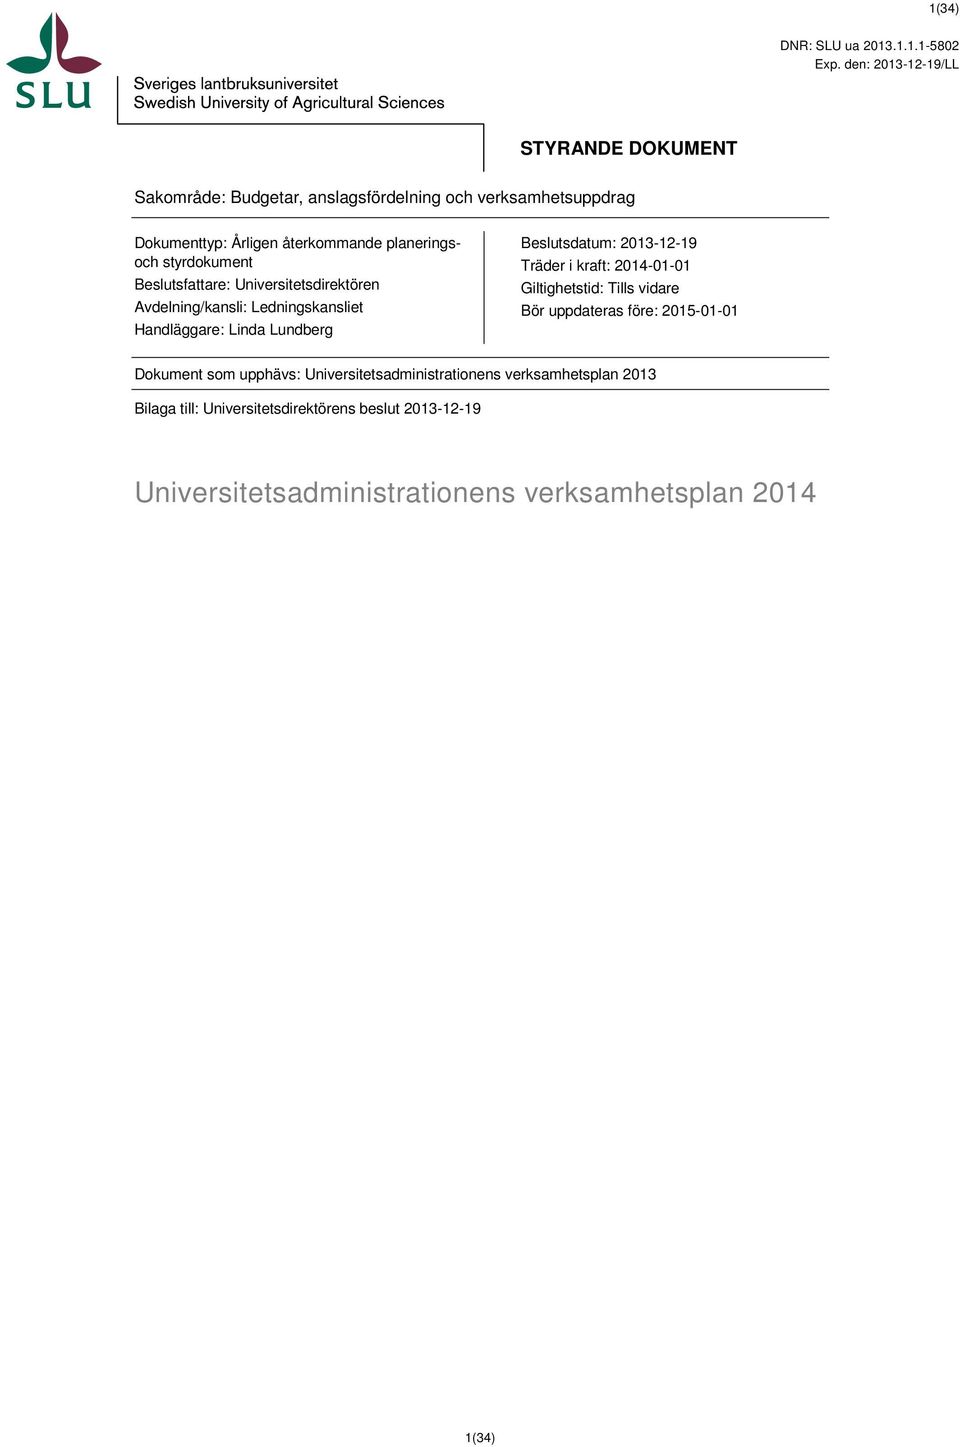 styrdokument Beslutsfattare: Universitetsdirektören Avdelning/kansli: Ledningskansliet Handläggare: Linda Lundberg Beslutsdatum: 2013-12-19 Träder i